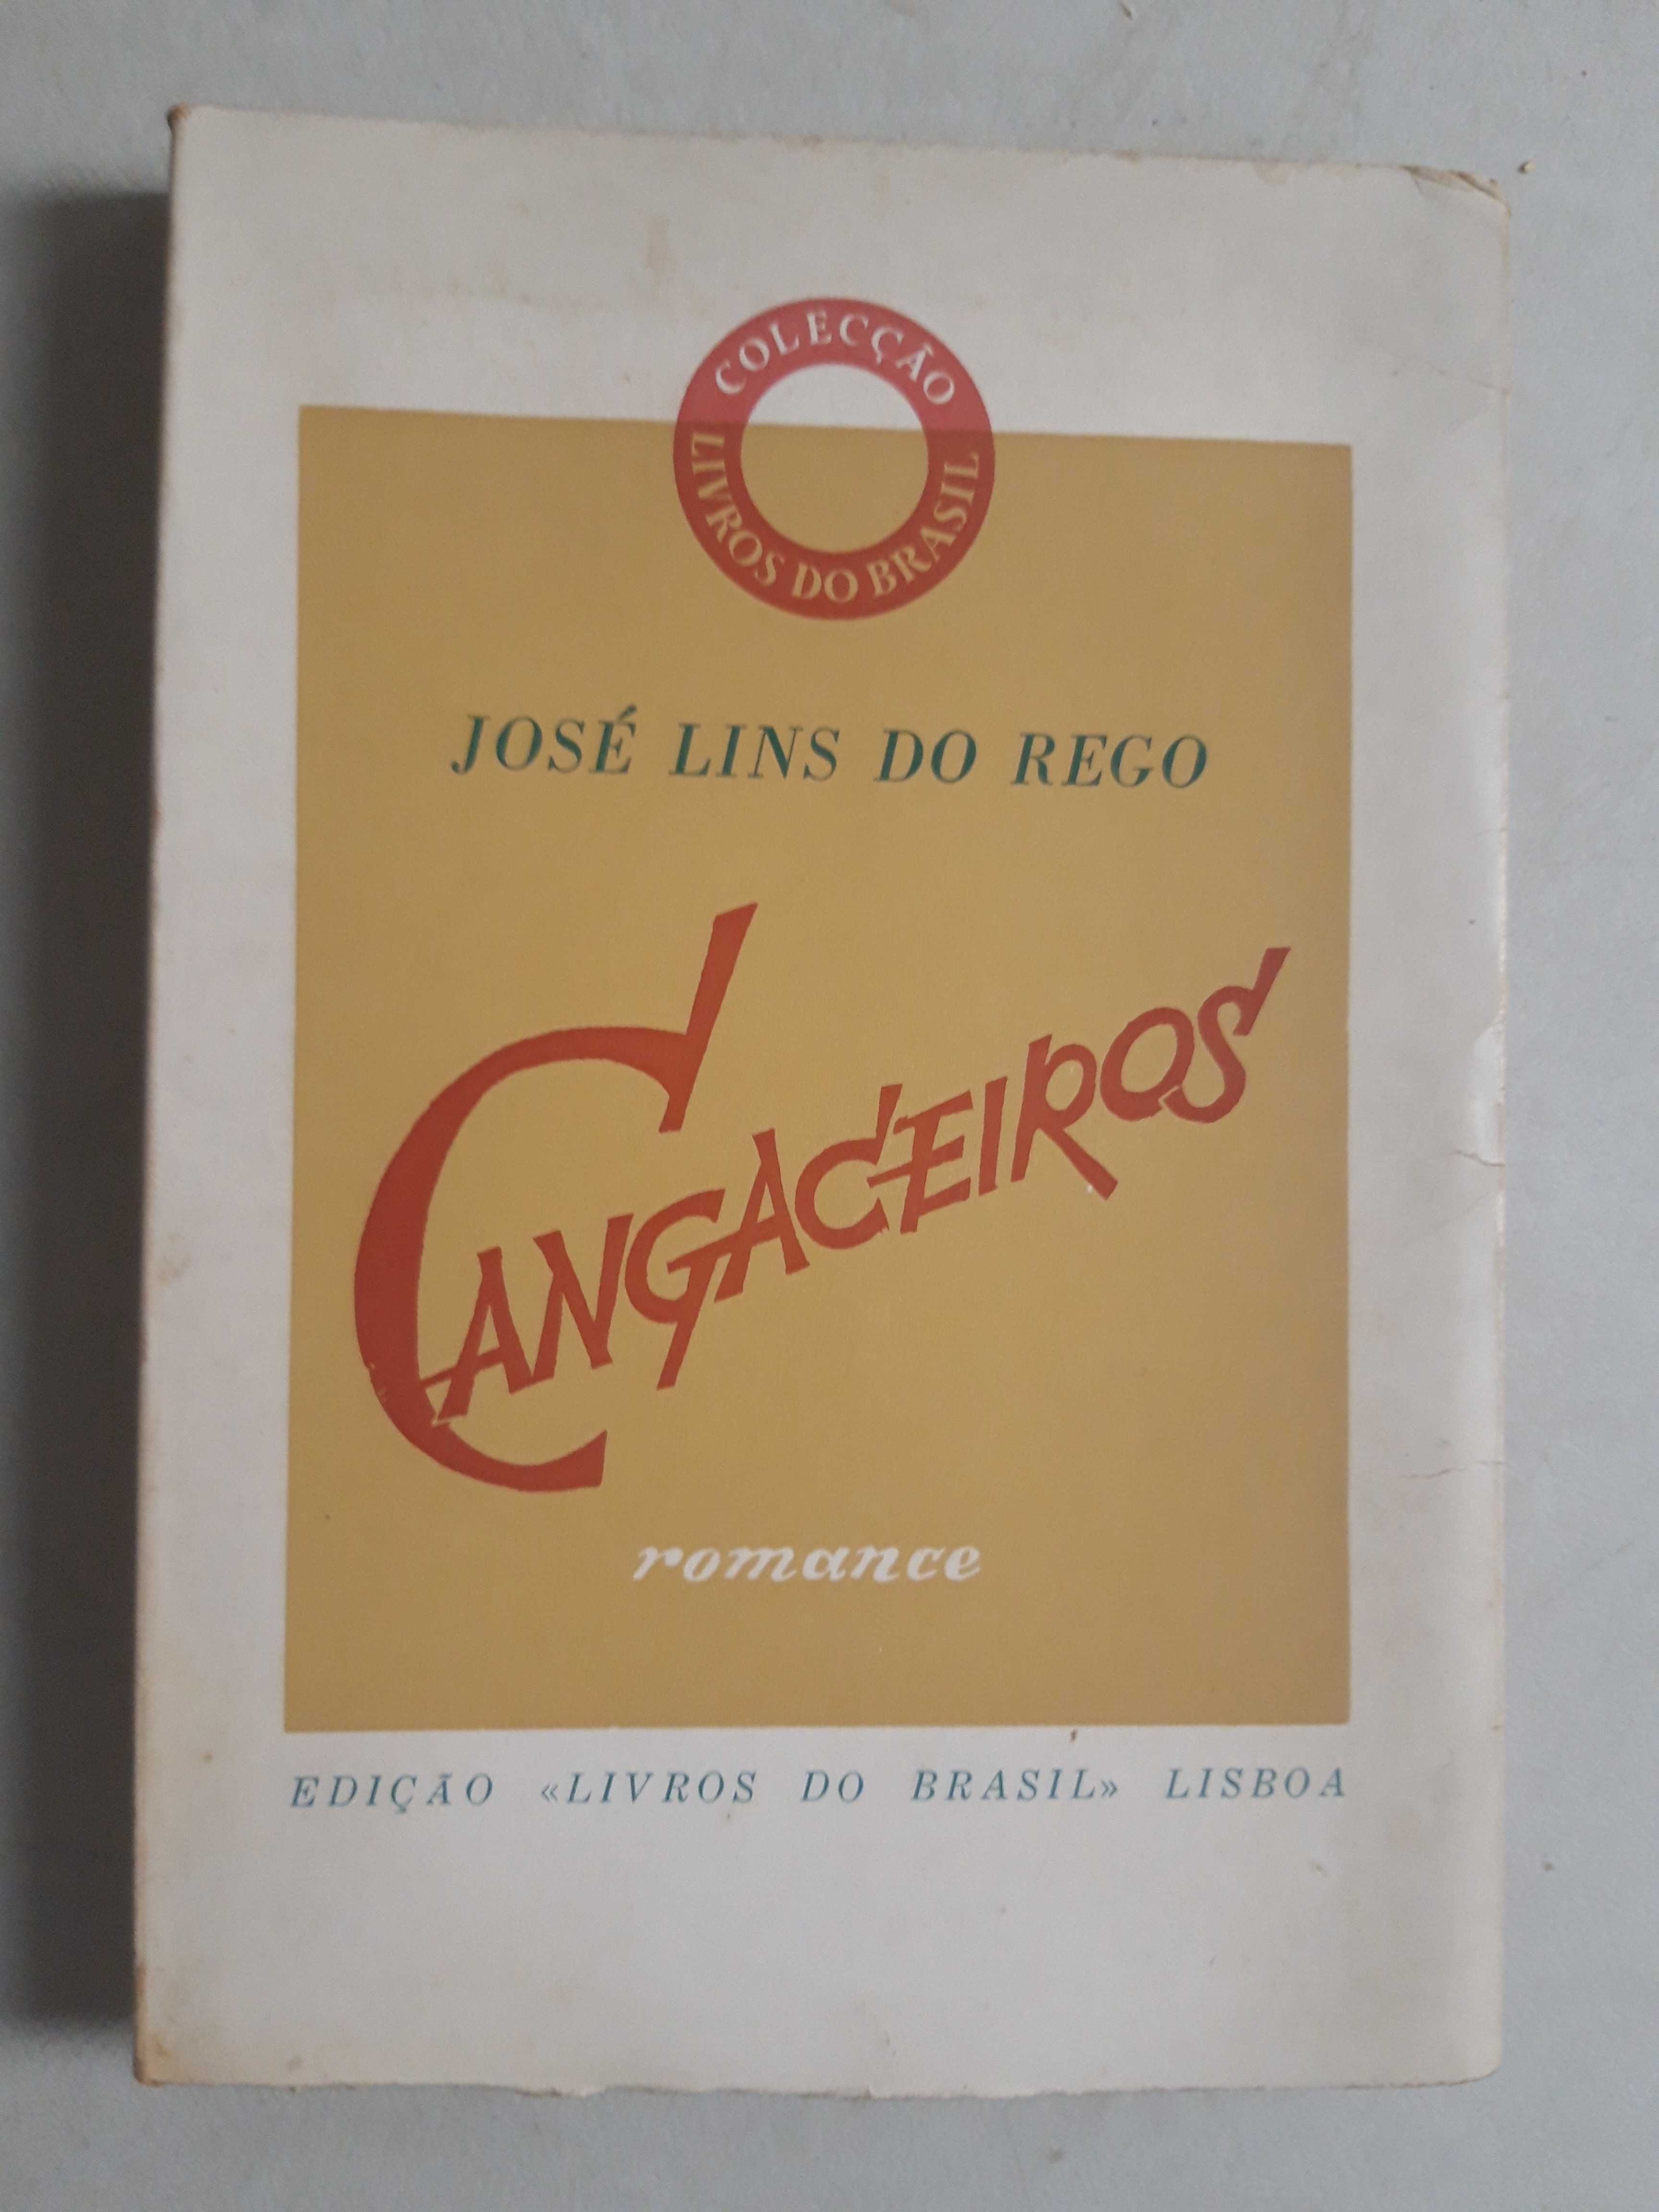 Livro PA-7 - José Lins do Rego - Cangaceiros